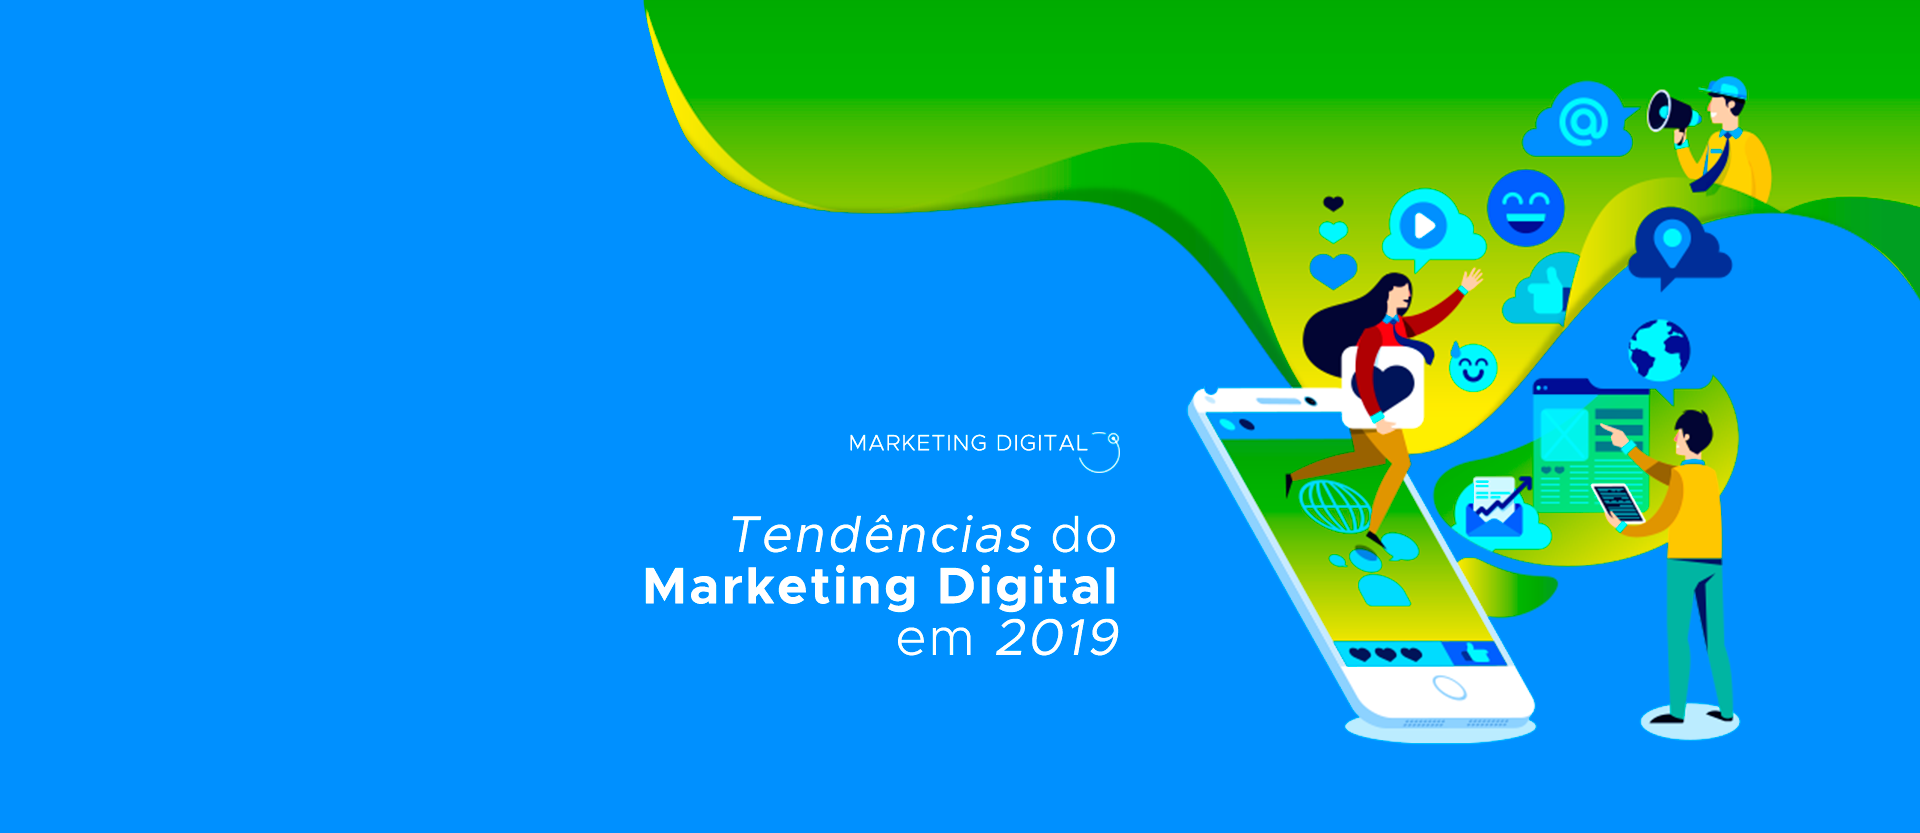 Tendências do Marketing Digital em 2019